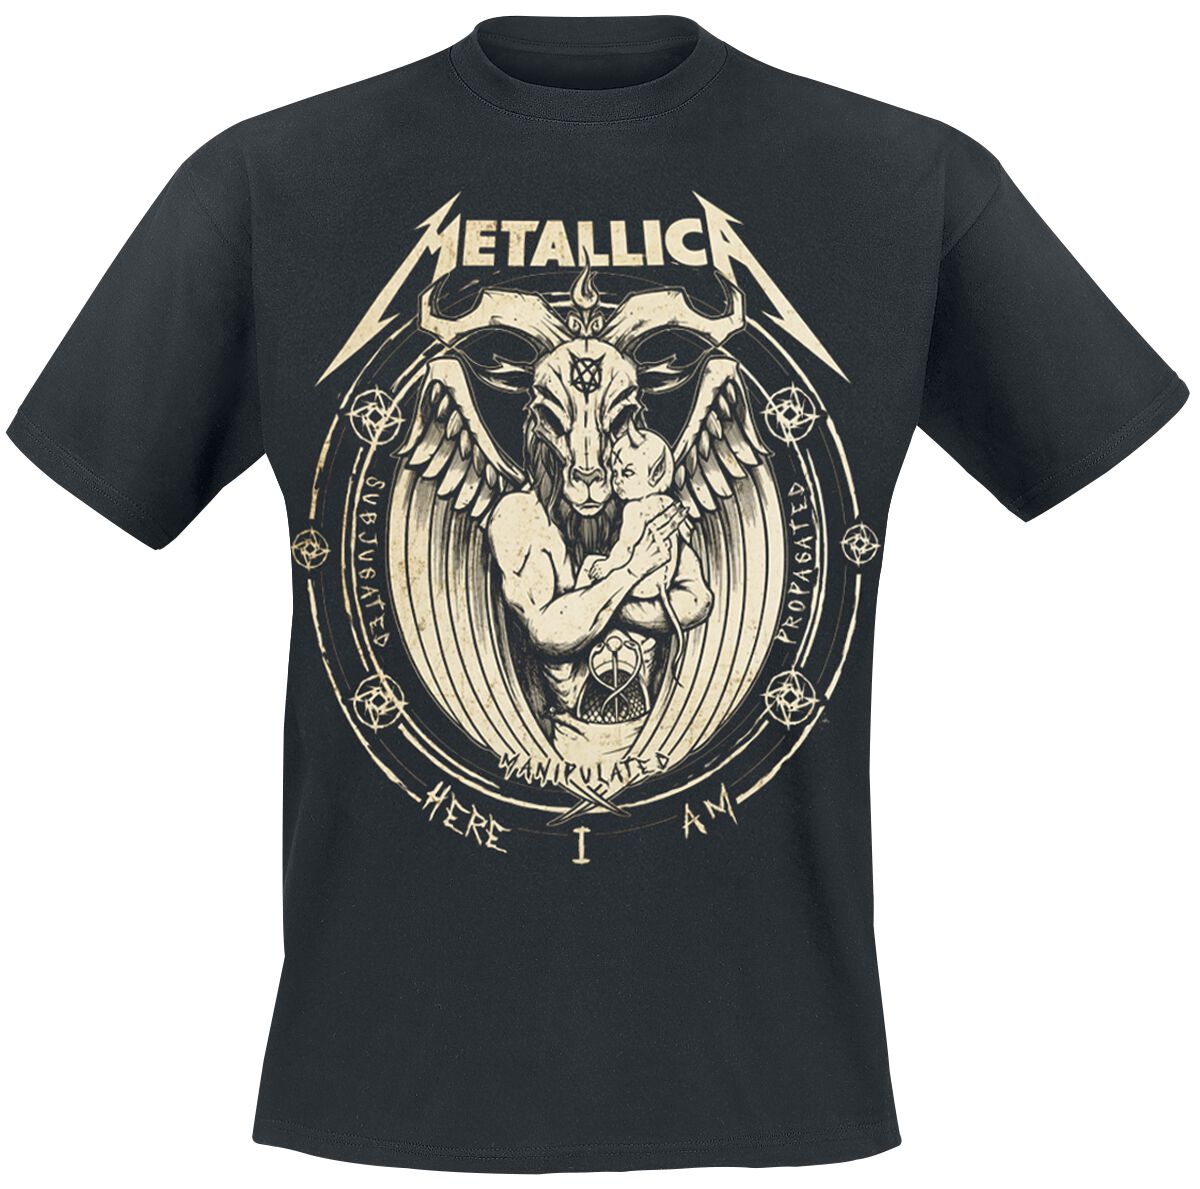 Metallica T-Shirt - Darkness Son - S bis 5XL - für Männer - Größe 5XL - schwarz  - Lizenziertes Merchandise!